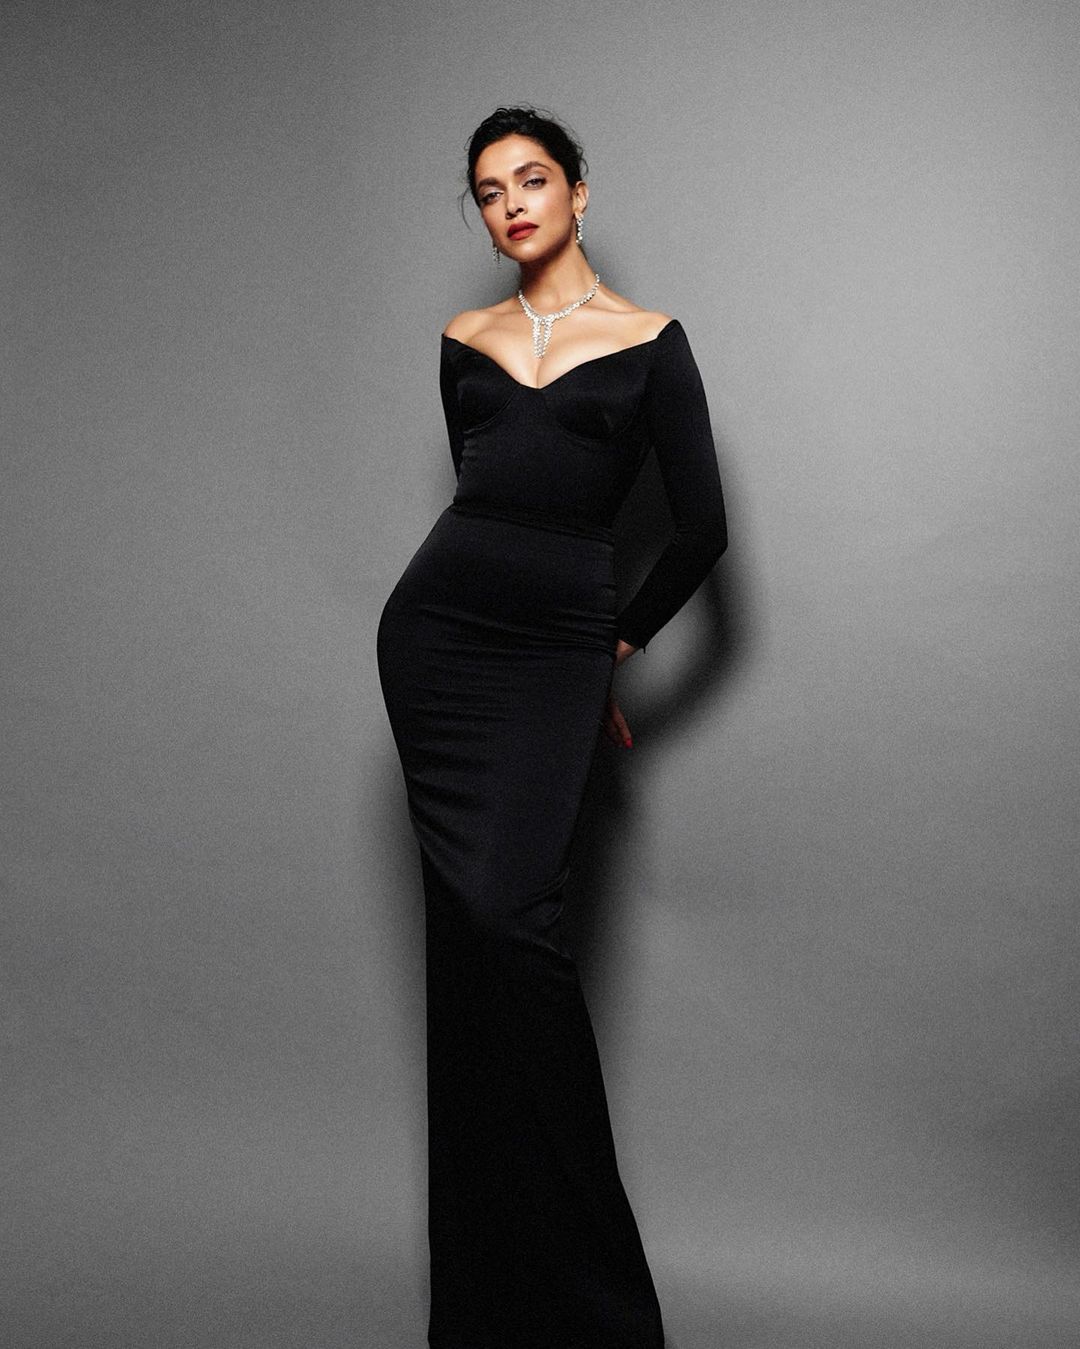 Deepika Padukone Picks A Louis Vuitton Shift Dress For Her First